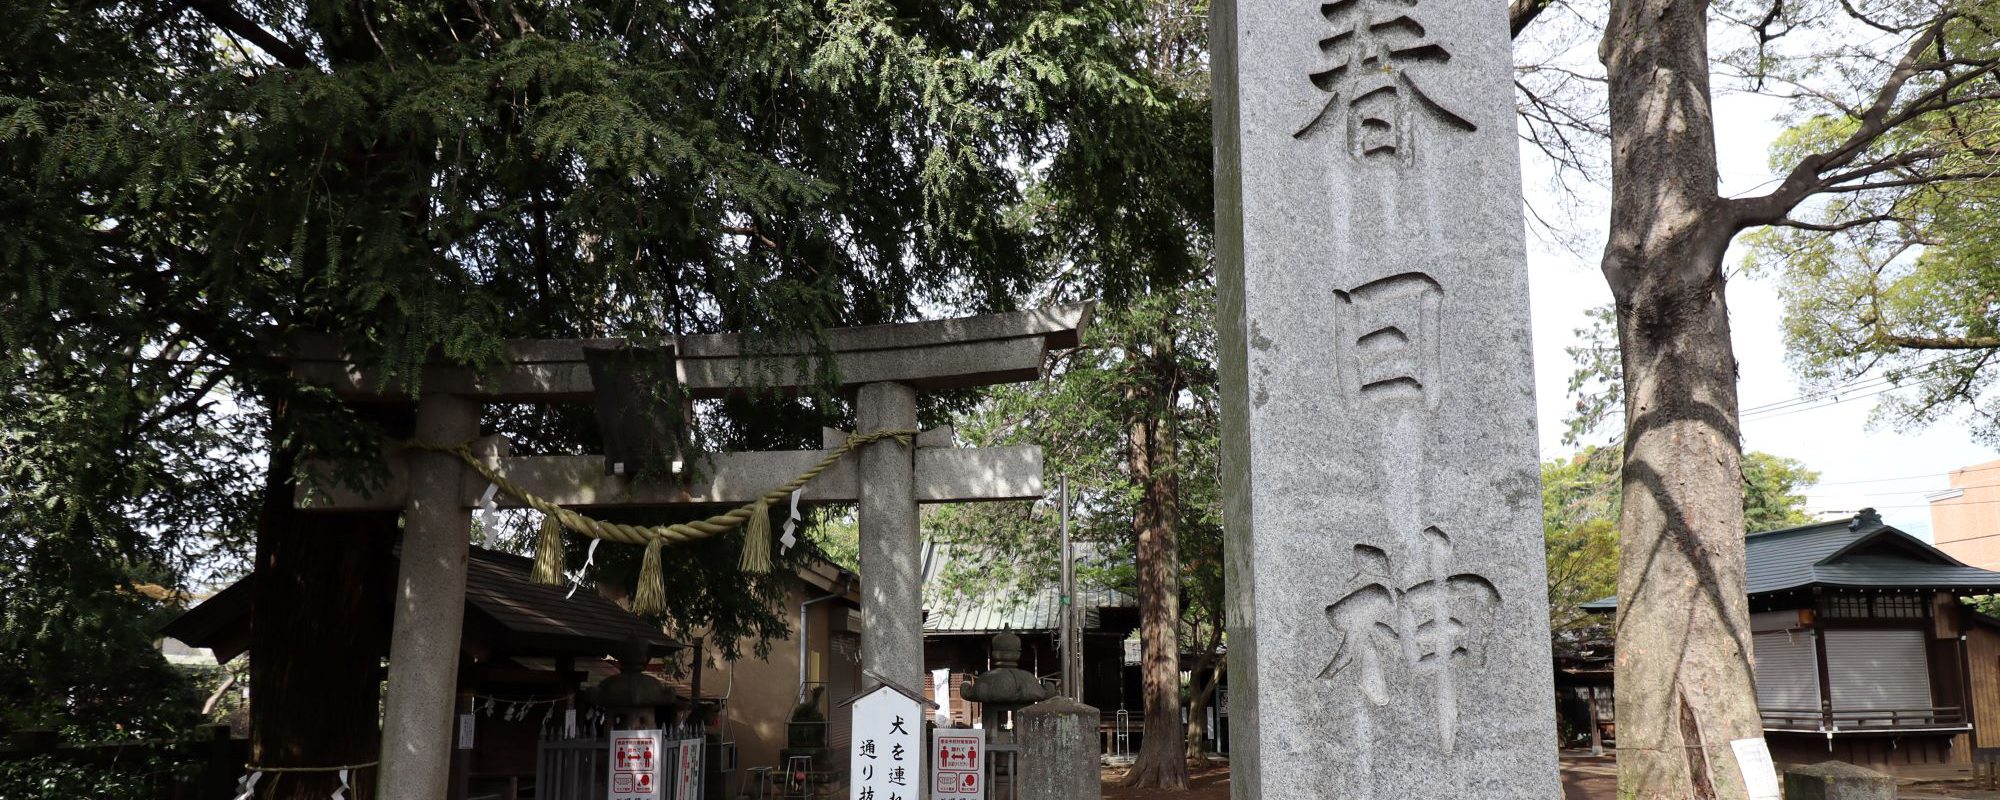 数多くの文人墨客に愛され続けた武蔵野の面影が残る住宅街・杉並宮前。